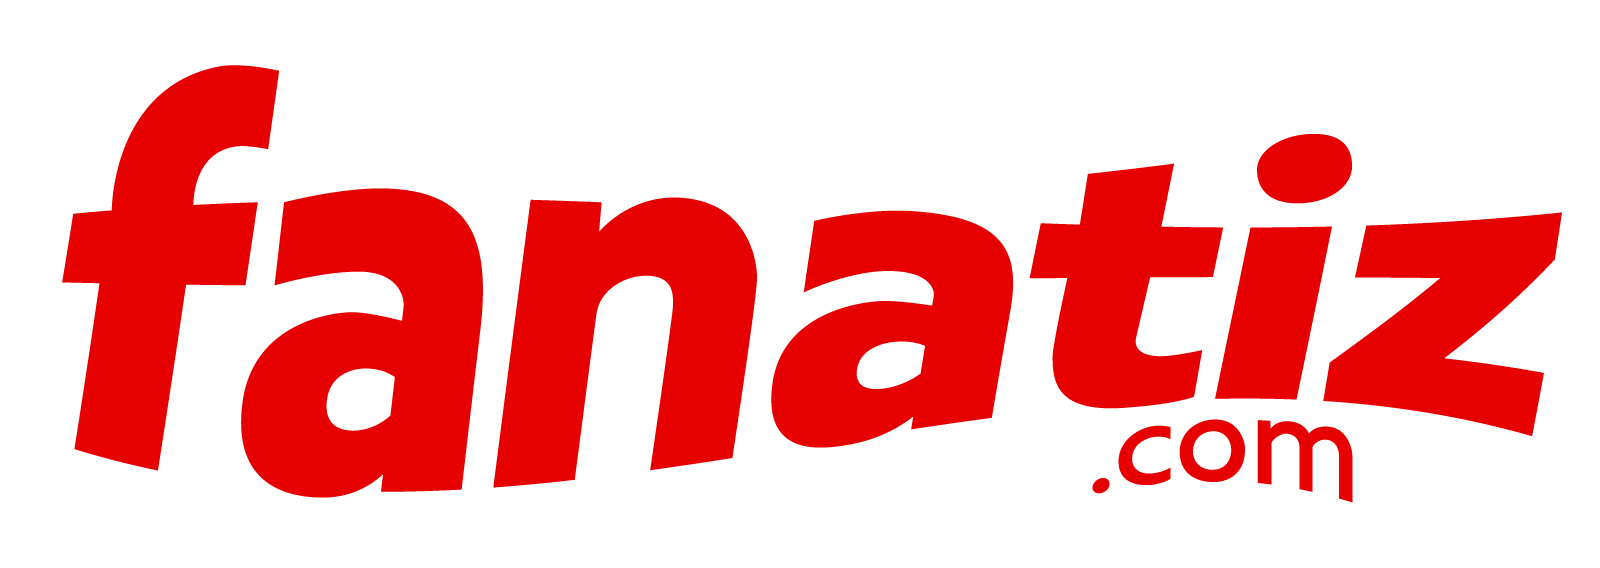 Logo Fanatiz